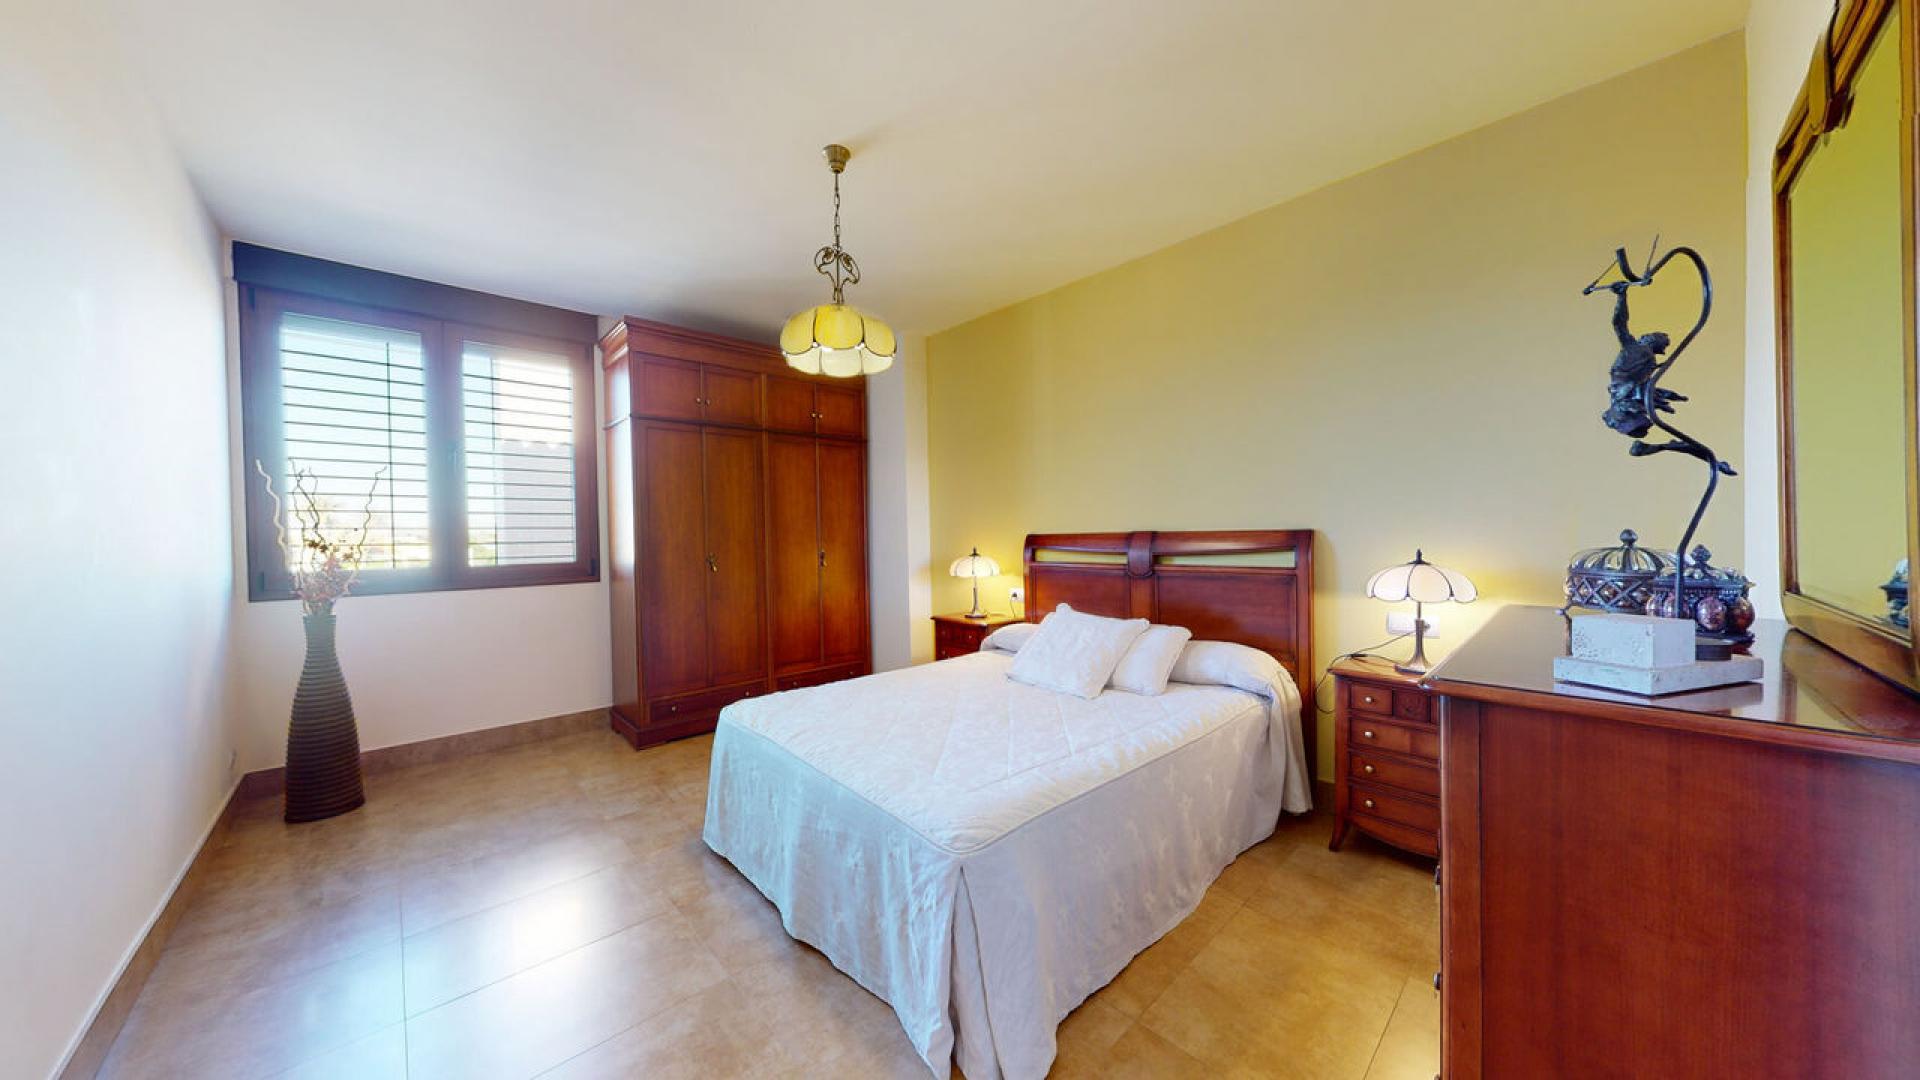 Elche, Valverde, Chalet Independiente con 6 dormitorios y 4 baños